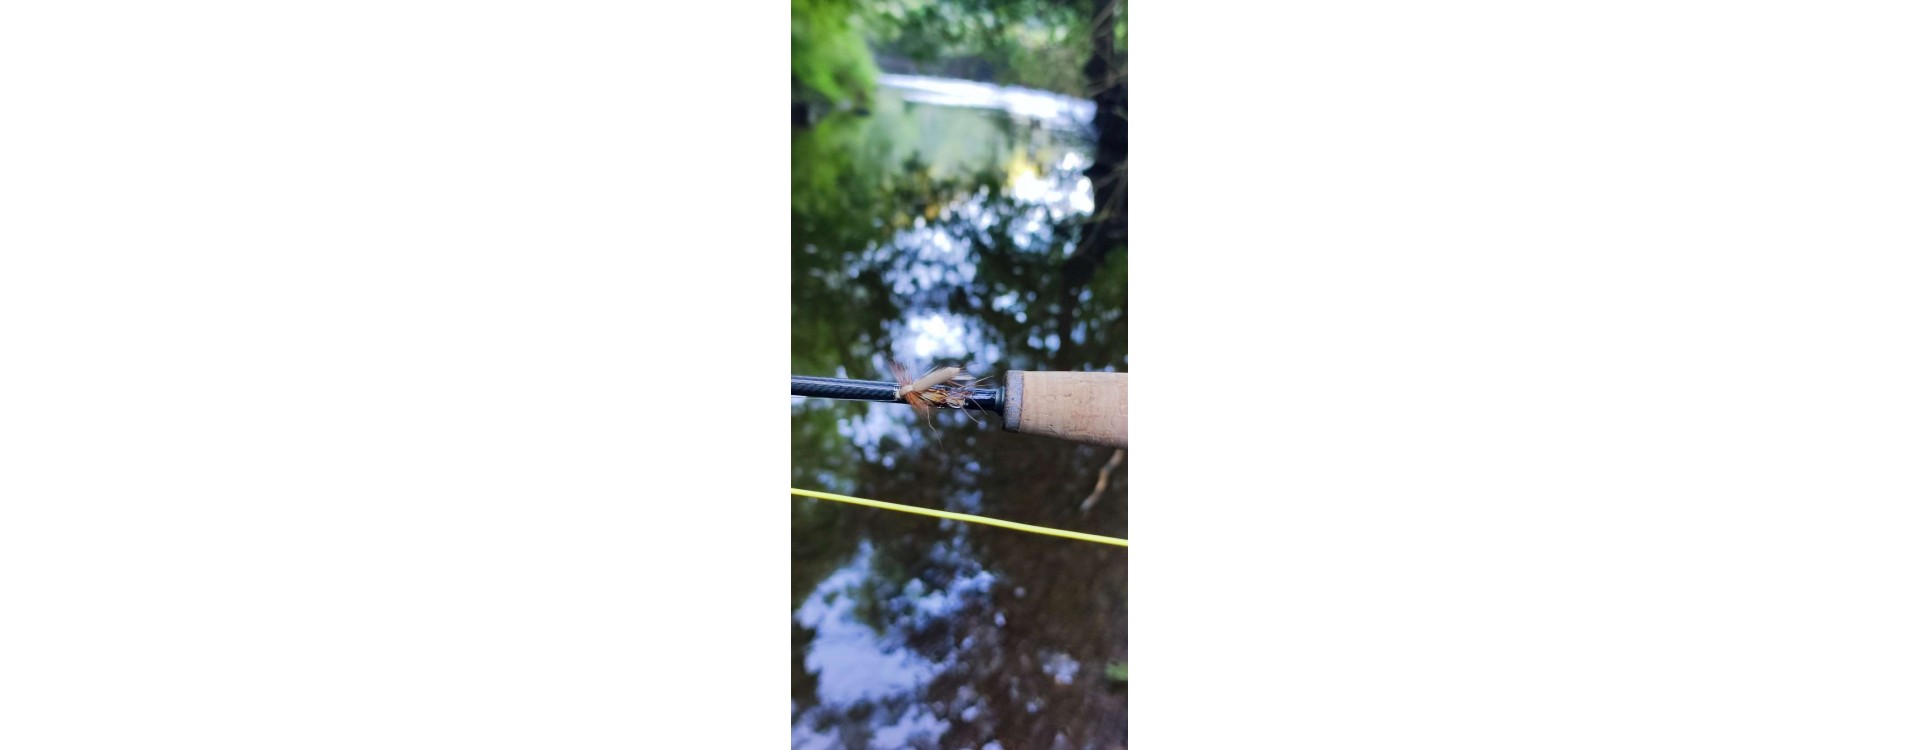 3 mouches pour la fermeture de la pêche de la truite en petite rivière